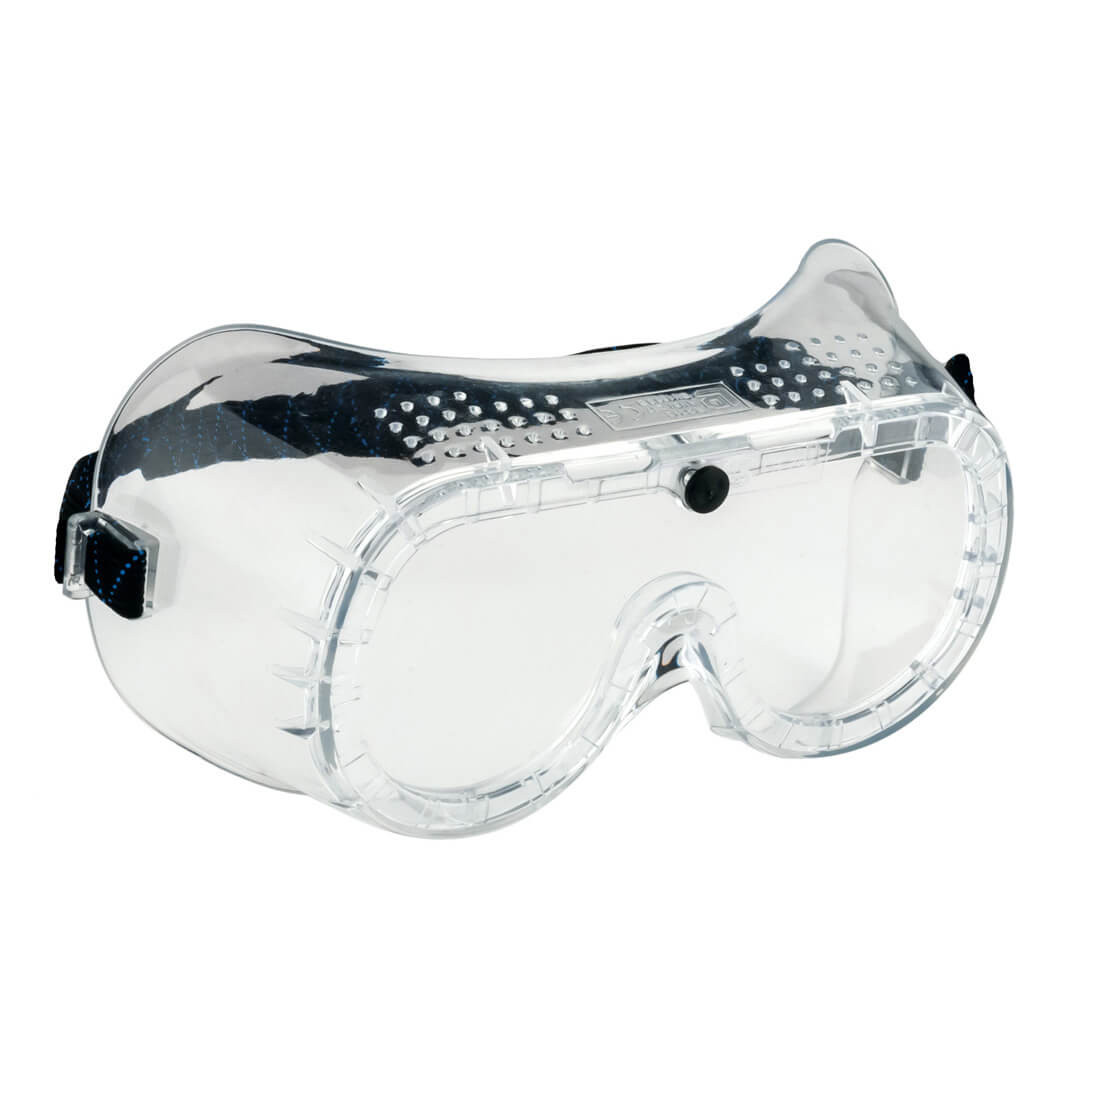 Lunette-masque ventilation directe - Les équipements de protection individuelle